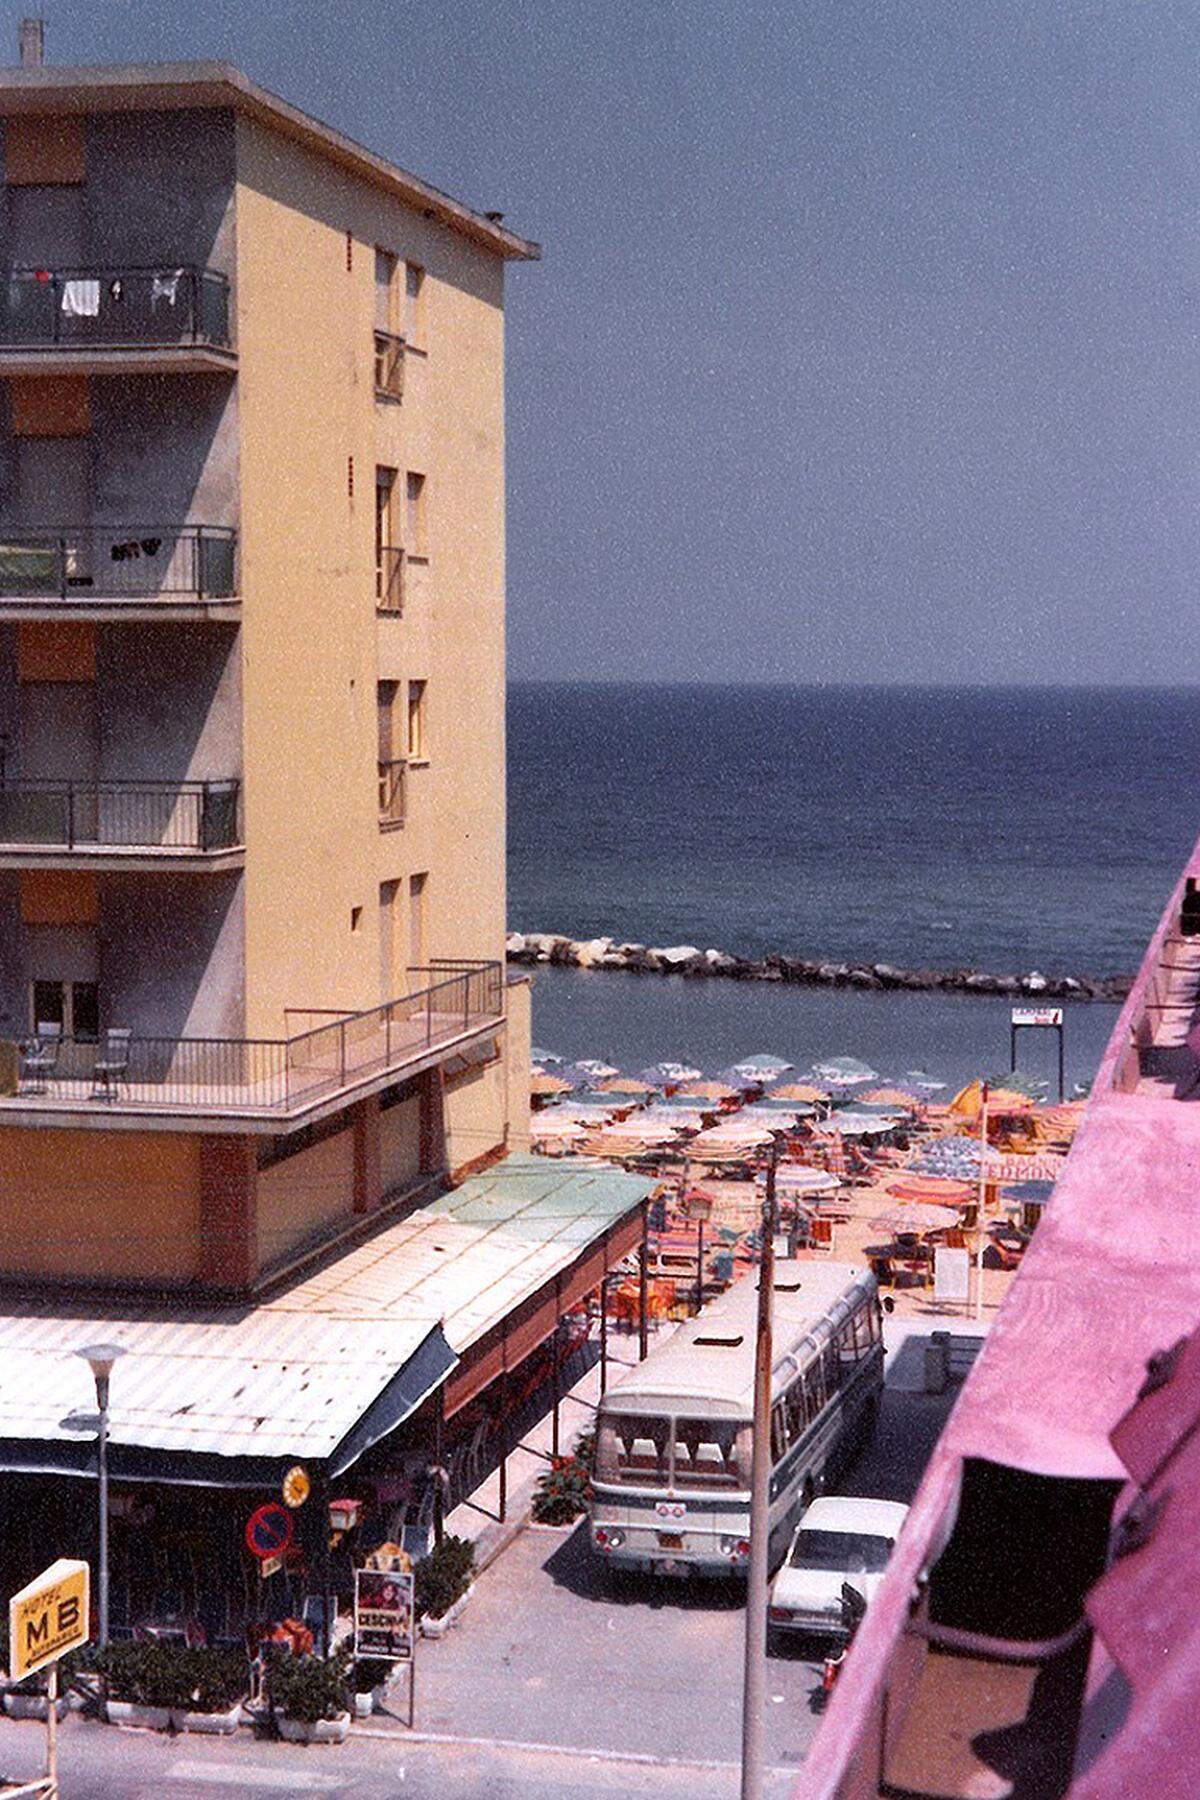 Mehr Bilder finden Sie auf dem Fotoblog:LINK zu "Vintage Adria" Foto: Rimini, Rudolf Ehrenreich Privatarchiv, 1977.